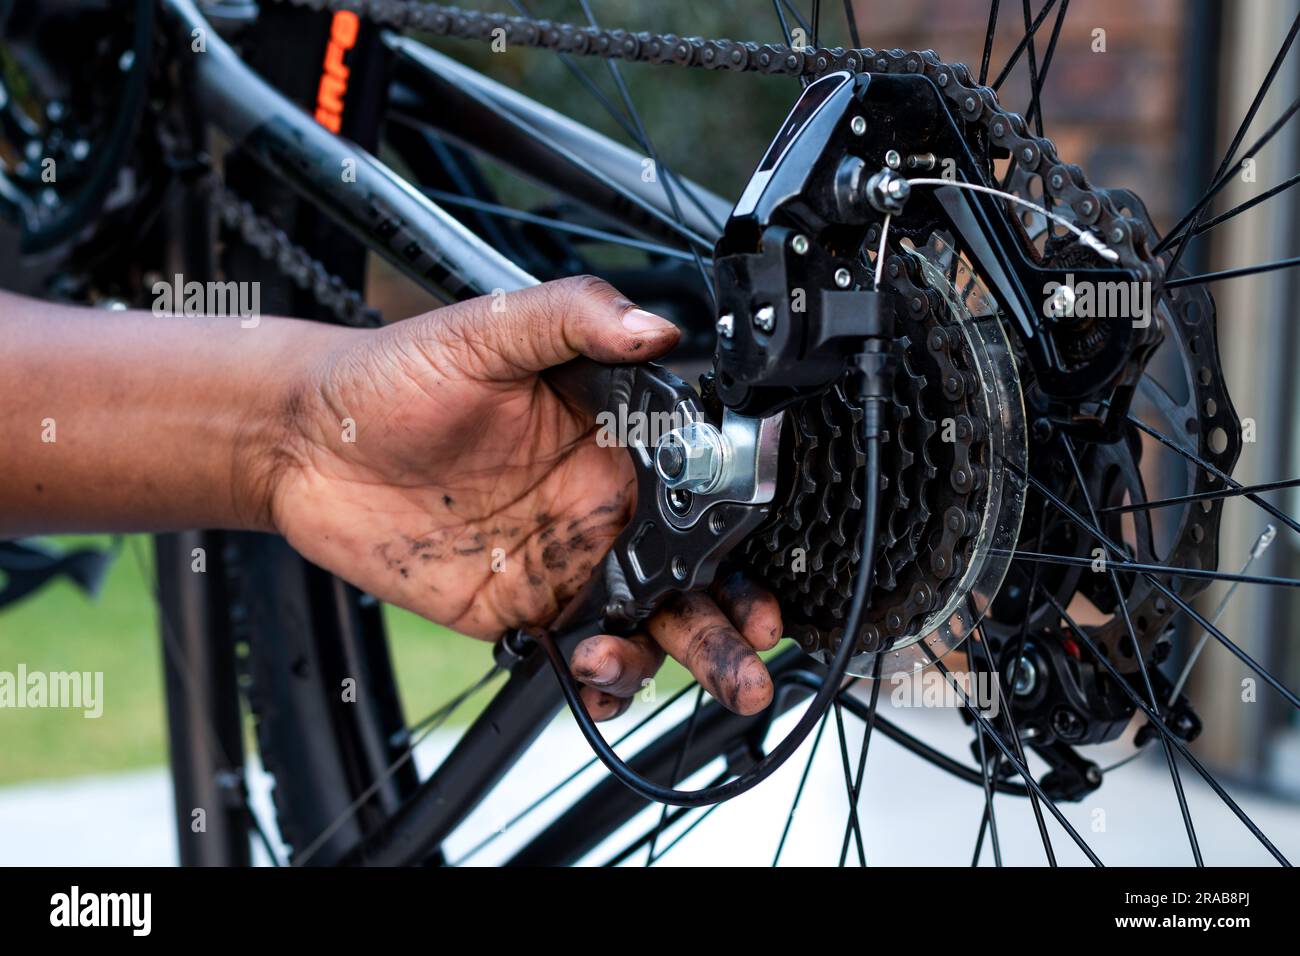 Nahaufnahme der Hand des Menschen bei der Reparatur der Fahrradkette Stockfoto